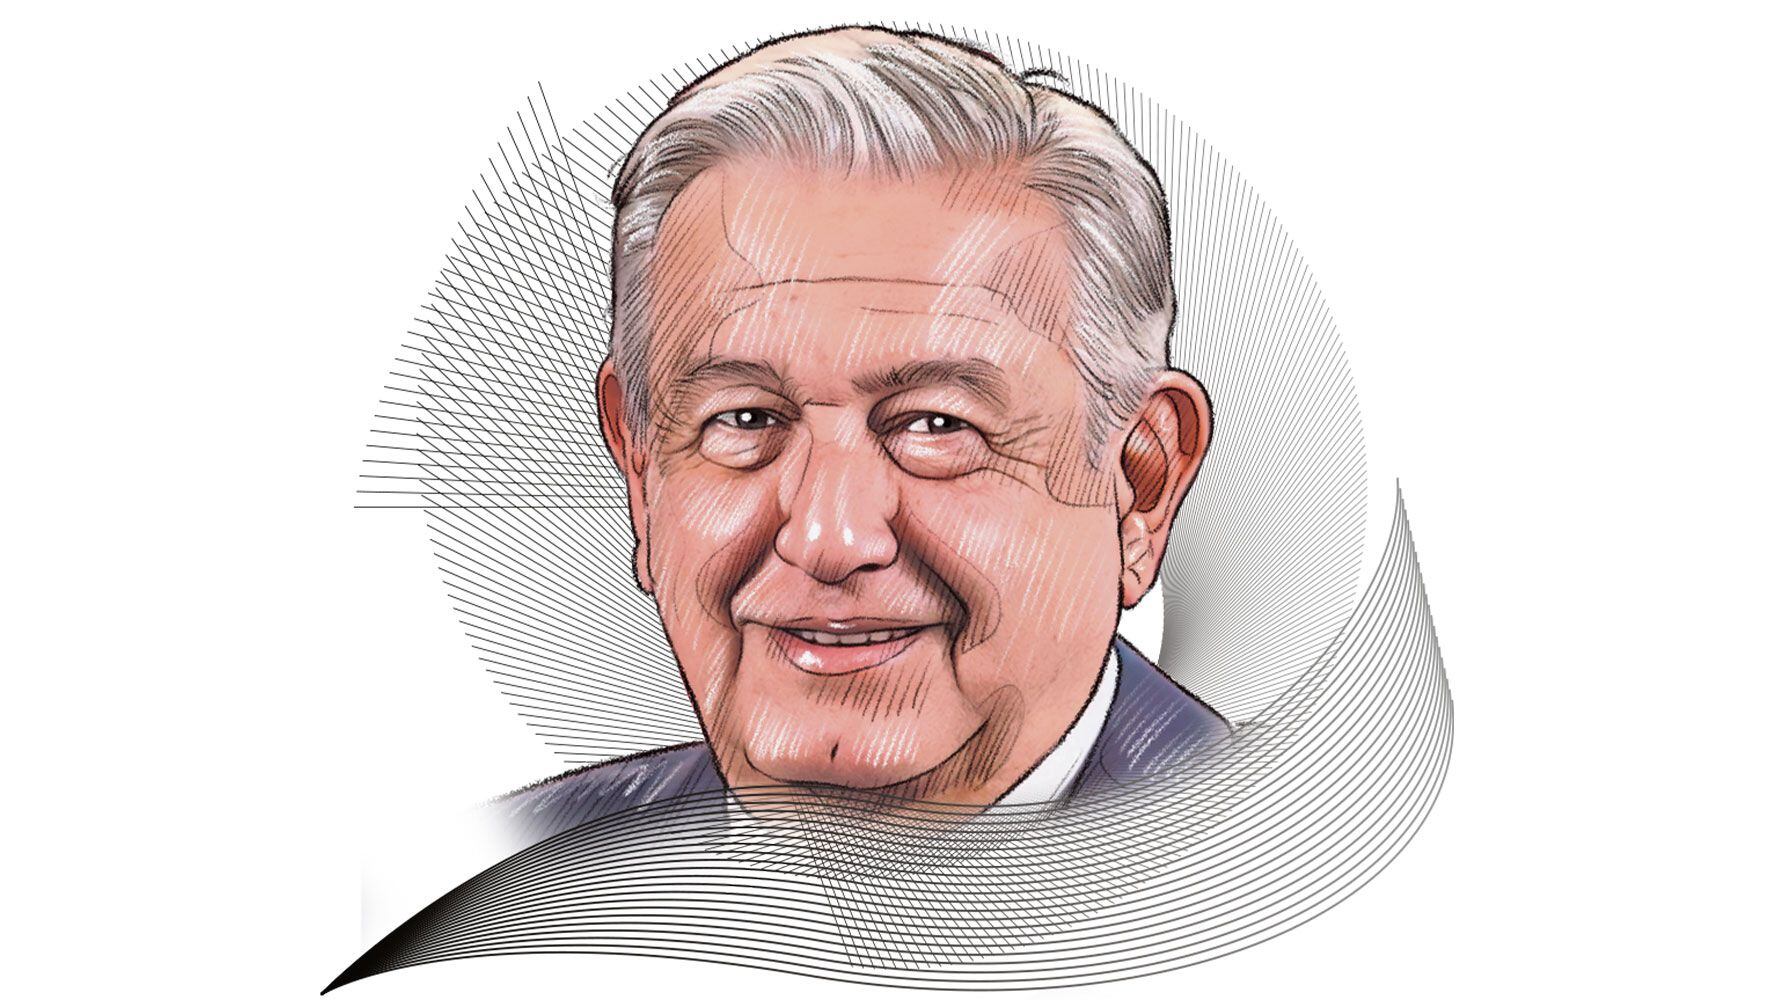 Andrés Manuel López Obrador,